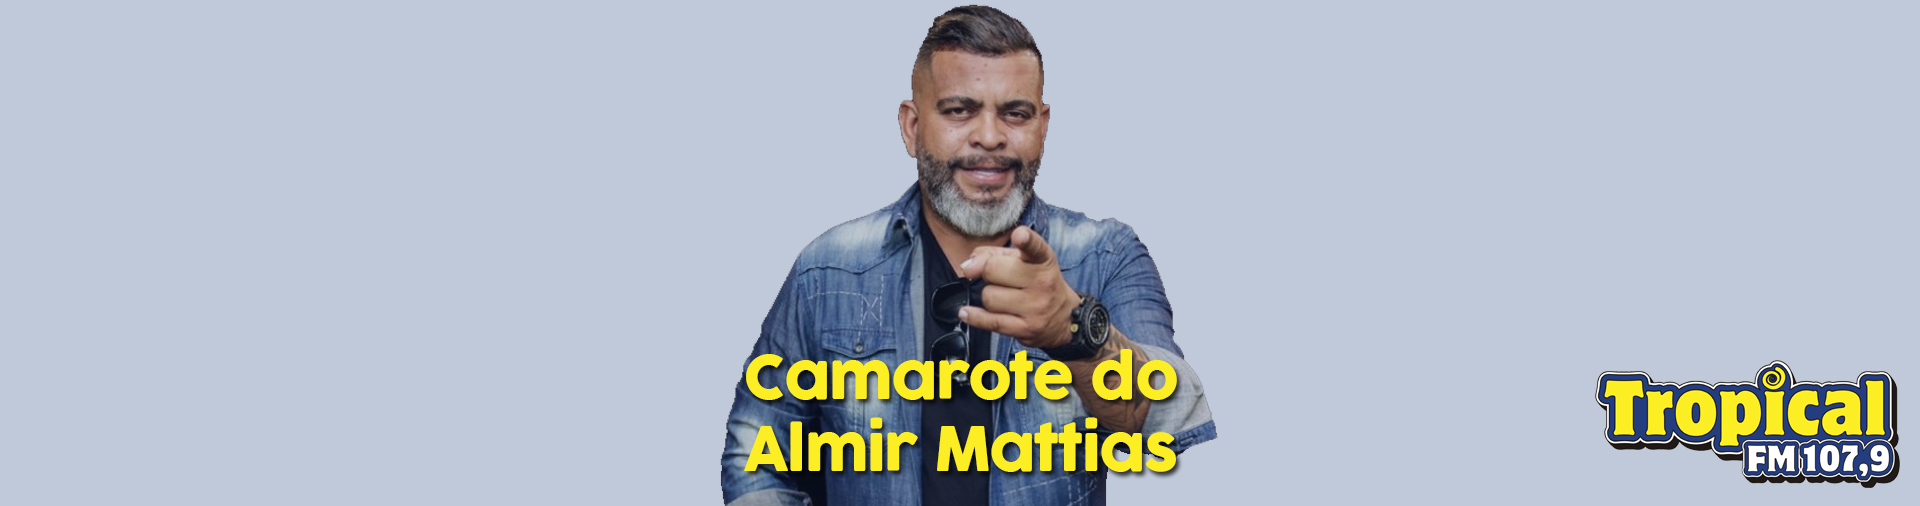 Banner Camarote do Almir Mattias